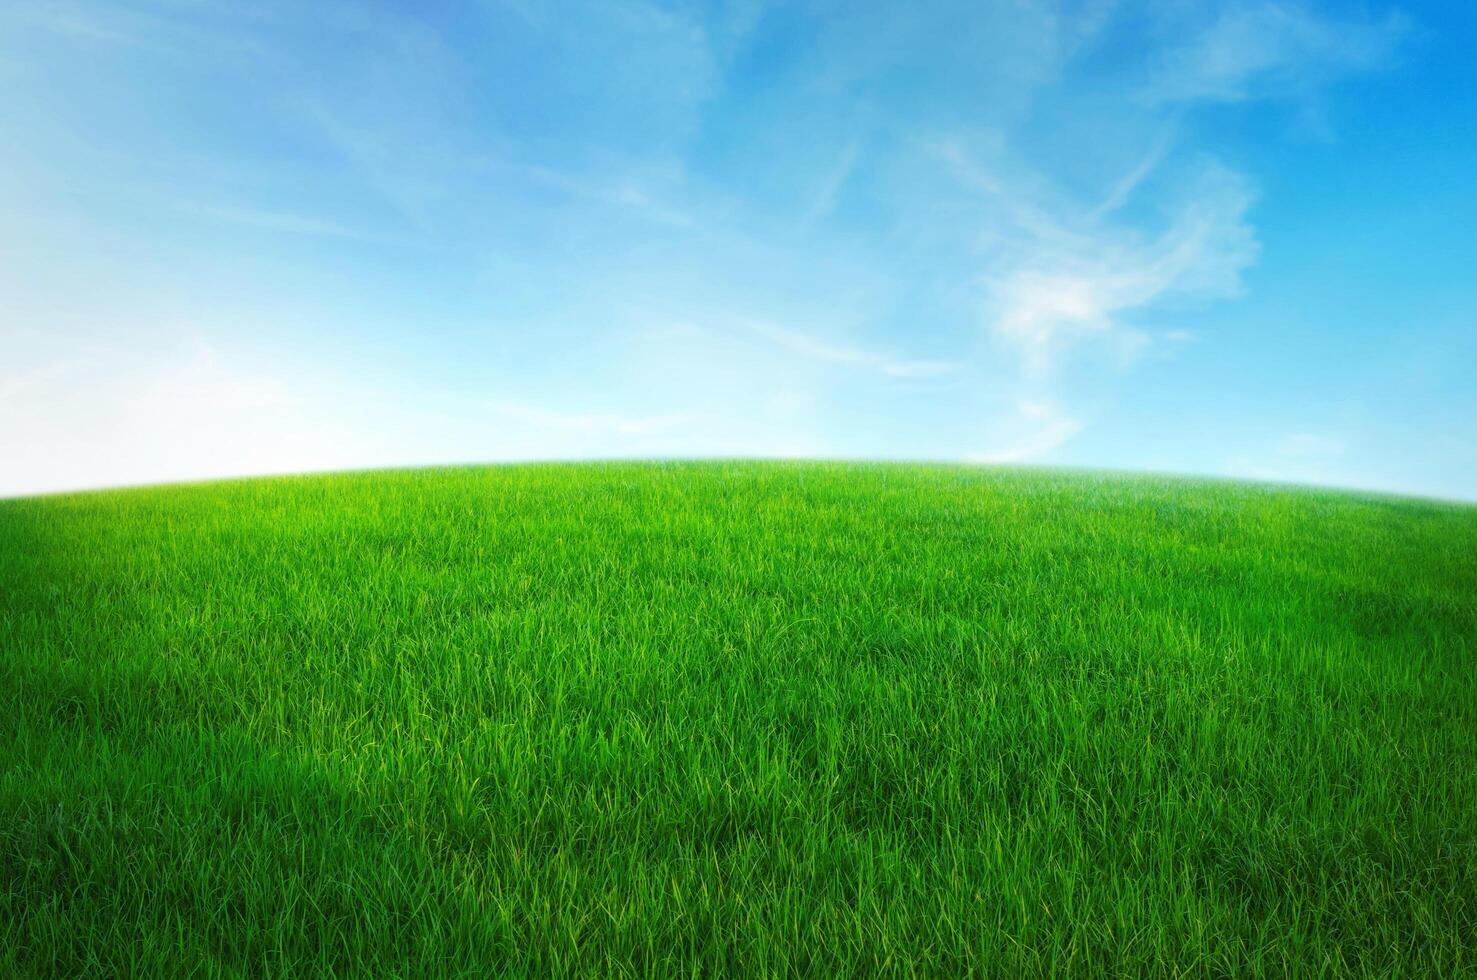 champ d'herbe verte avec ciel bleu et nuage blanc. fond de paysage naturel photo